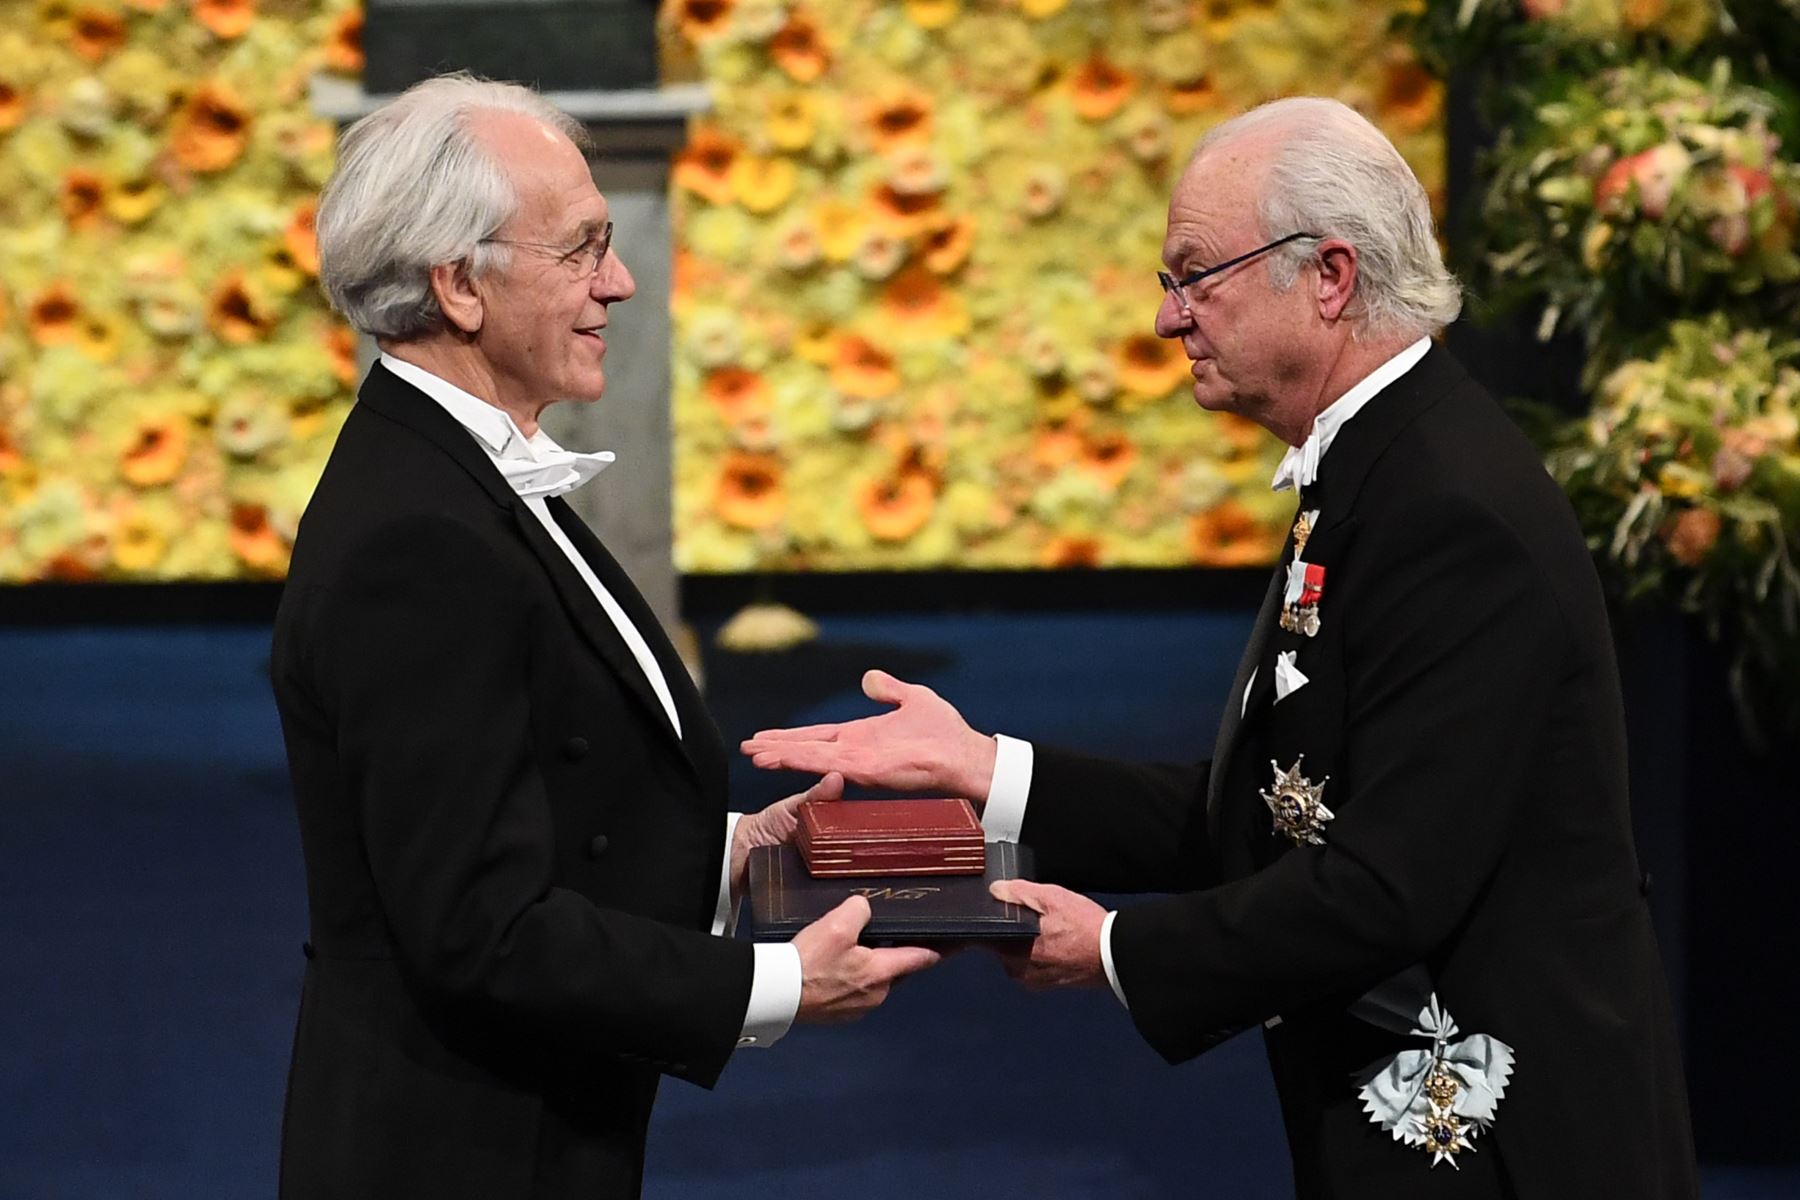 Co-ganador del Premio Nobel de Física 2018 El físico francés Gerard Mourou recibe su Premio Nobel del Rey Carl XVI Gustaf de Suecia (R) durante la ceremonia de entrega de Premios 2018 el 10 de diciembre de 2018 en la Sala de Conciertos de Estocolmo, Suecia. AFP